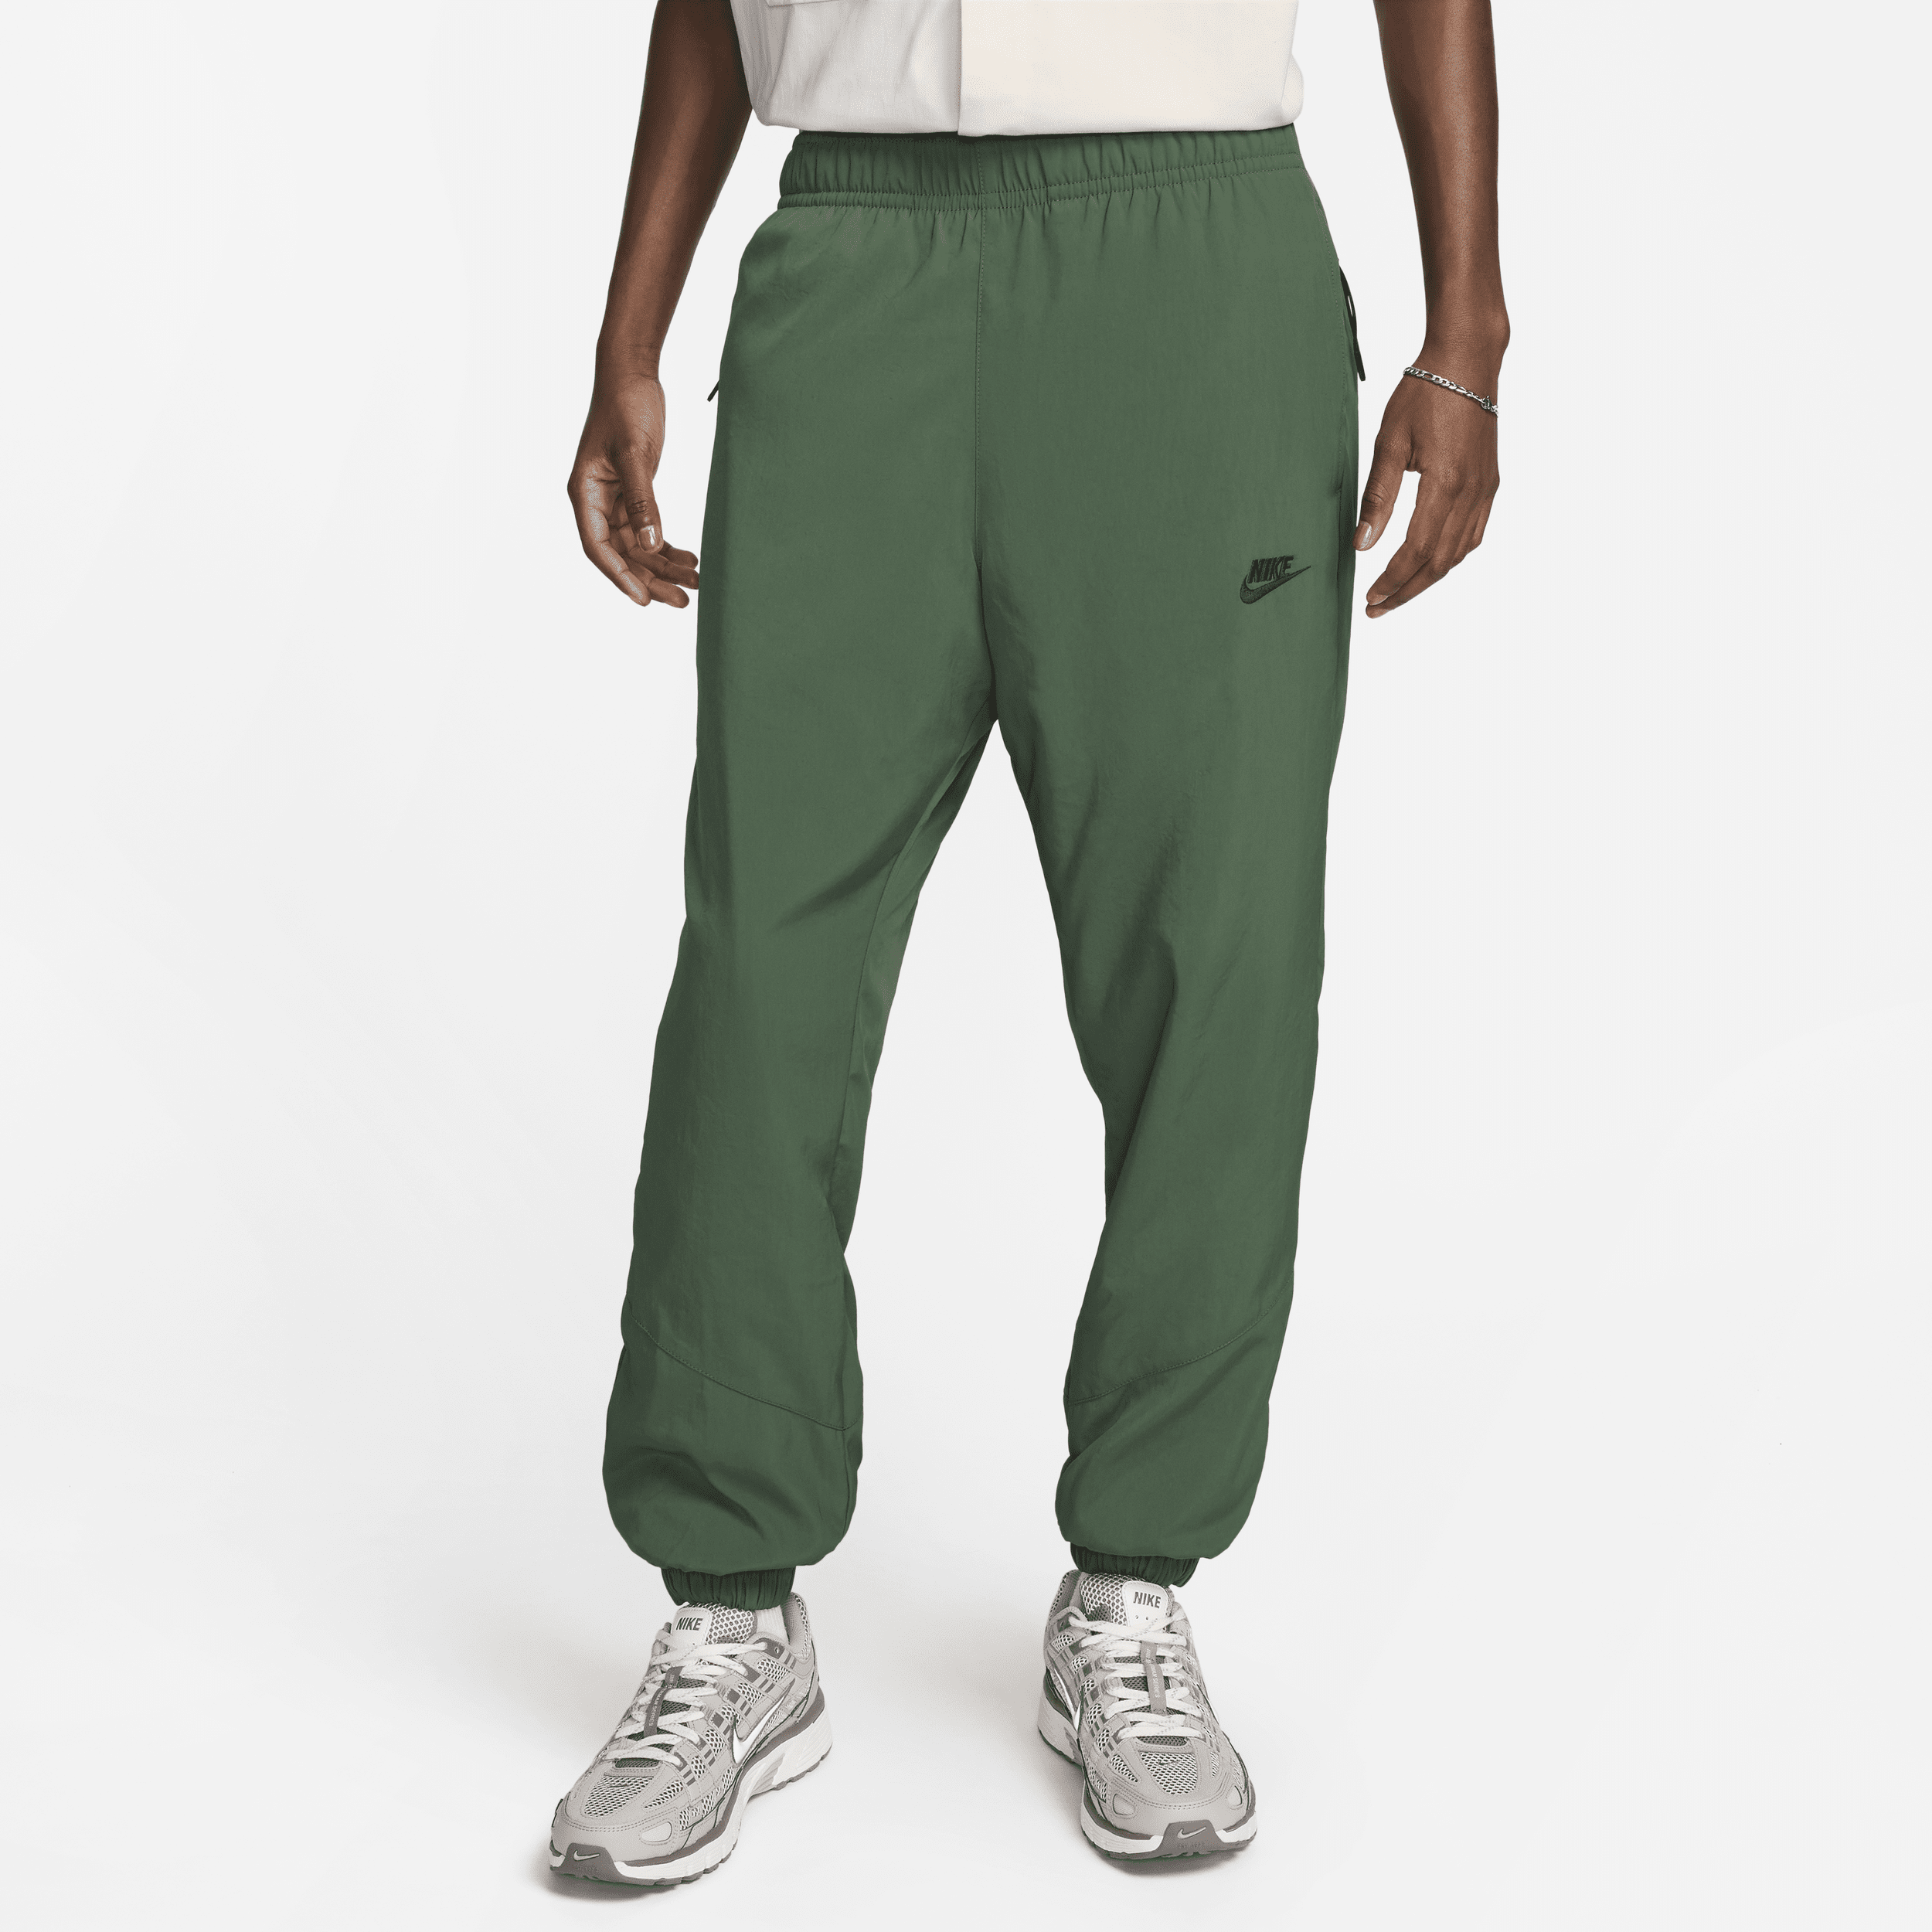 Nike Windrunner Pantalón de tejido Woven para el invierno - Hombre - Verde